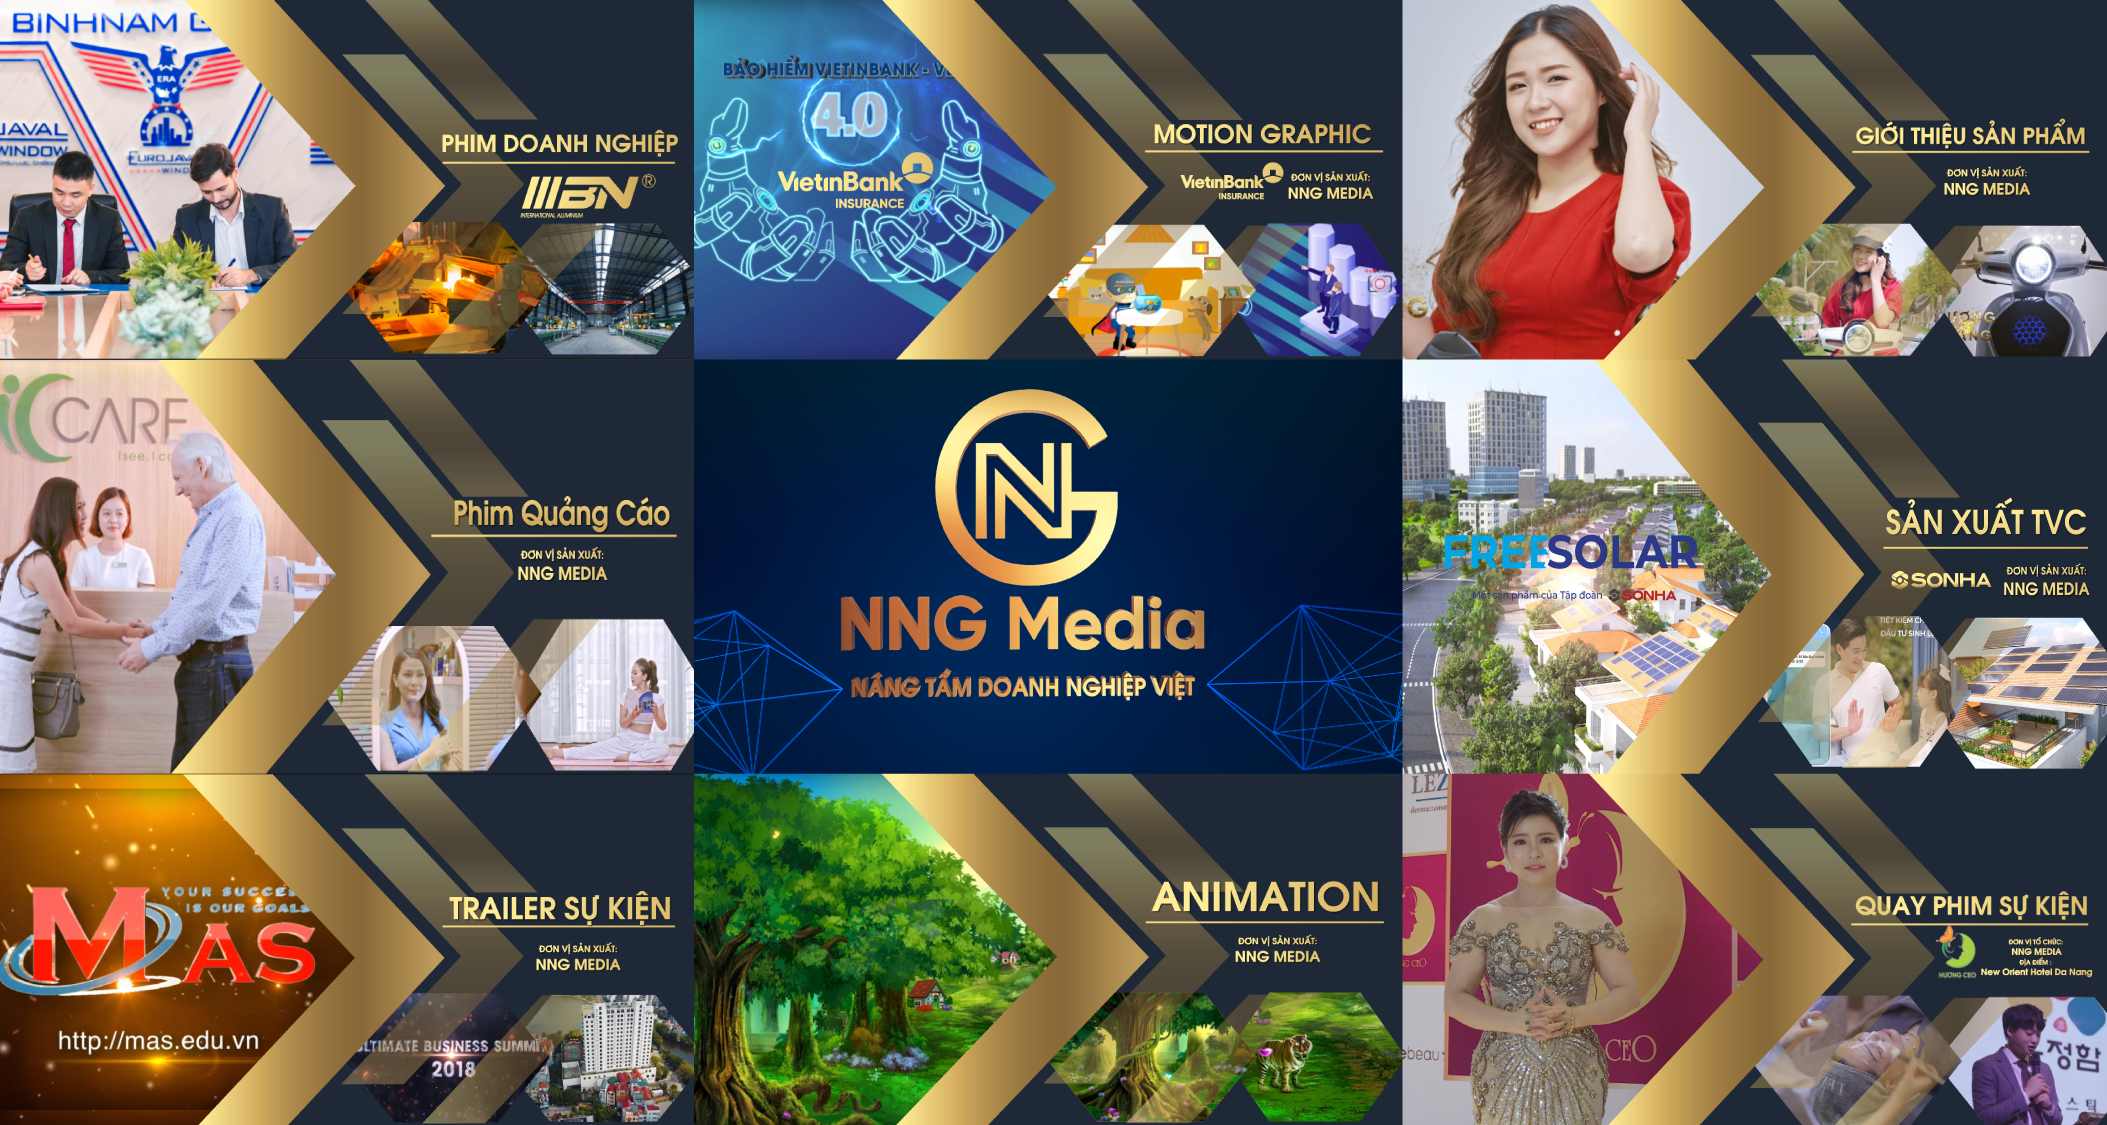 NNG MEDIA - Quảng Cáo NNG - Công Ty TNHH Truyền Thông NNG